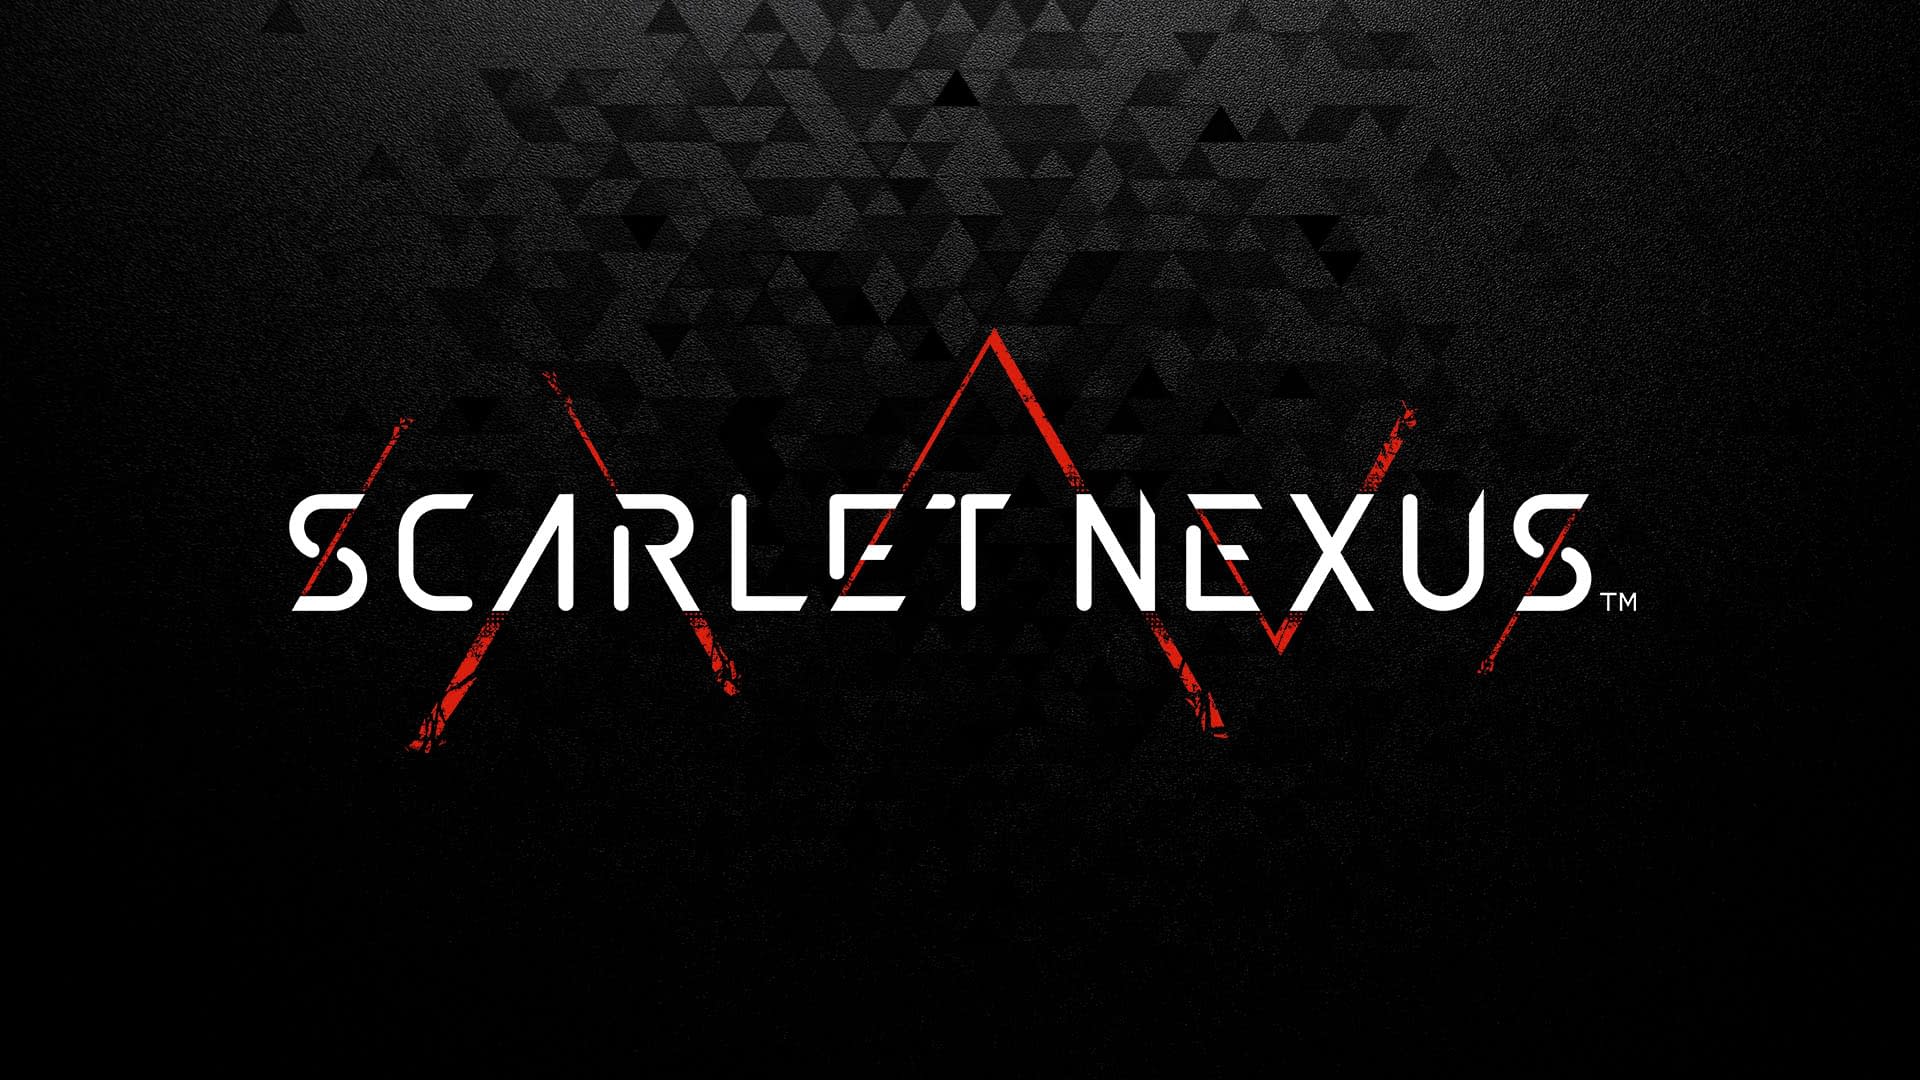 Scarlet Nexus HD wallpaper  Peakpx